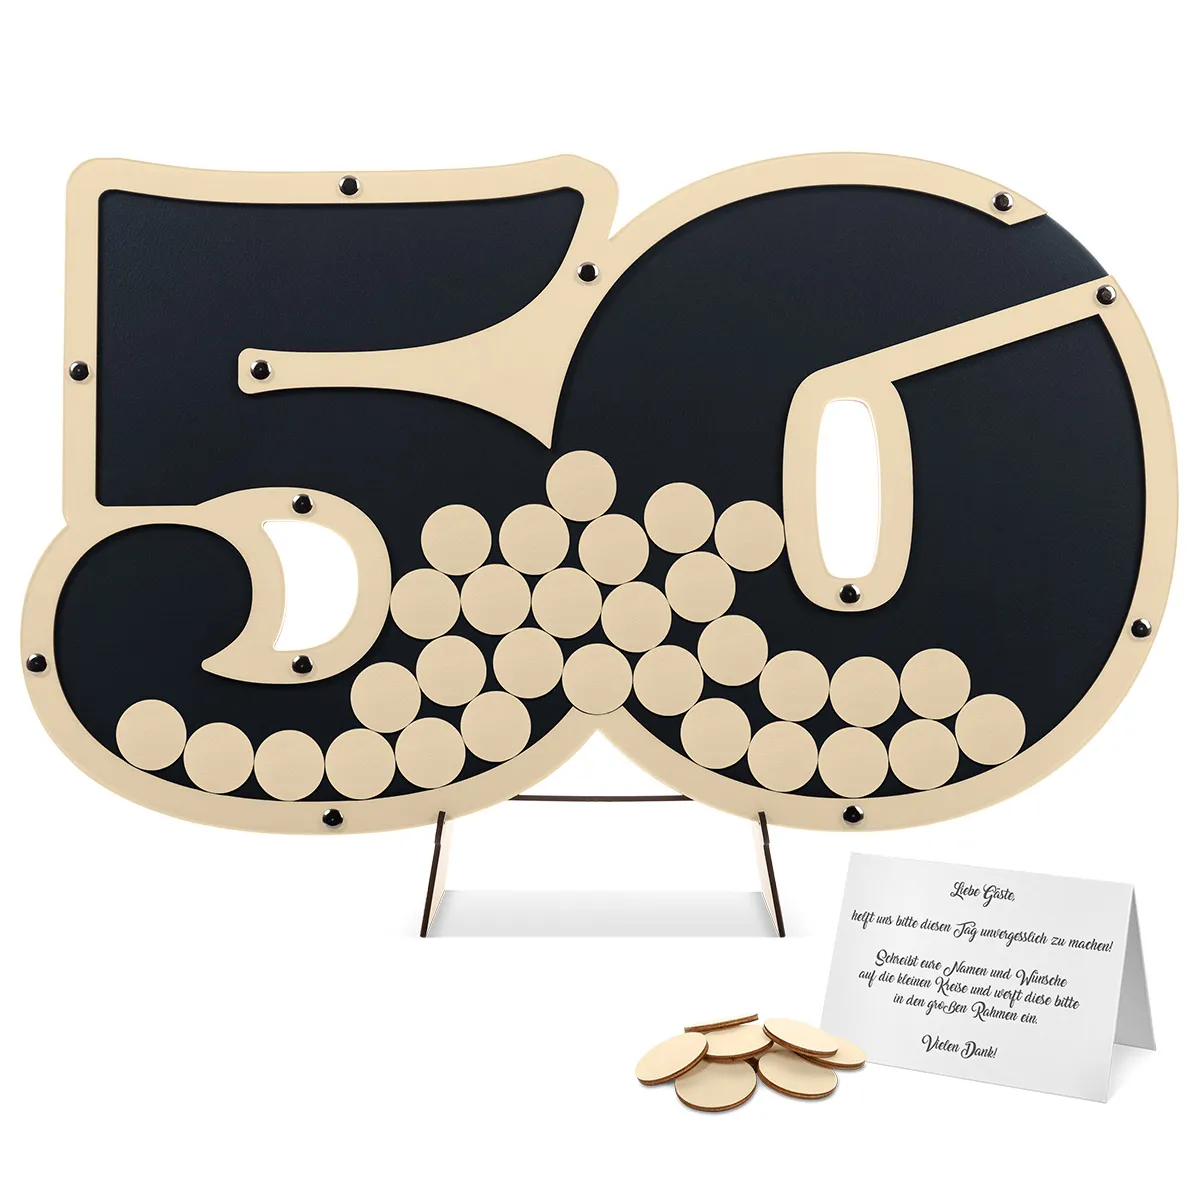 Geburtstag Gästebuch Alternative - 50 Jahre Anthrazit